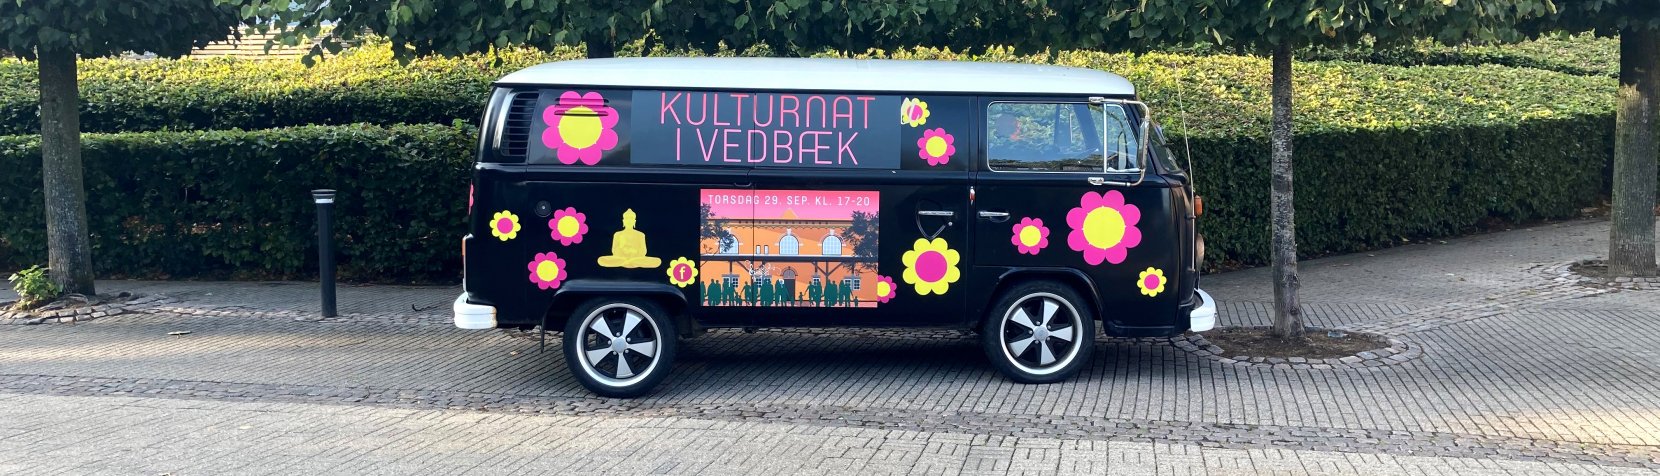 Vedbæk Kulturnat bus